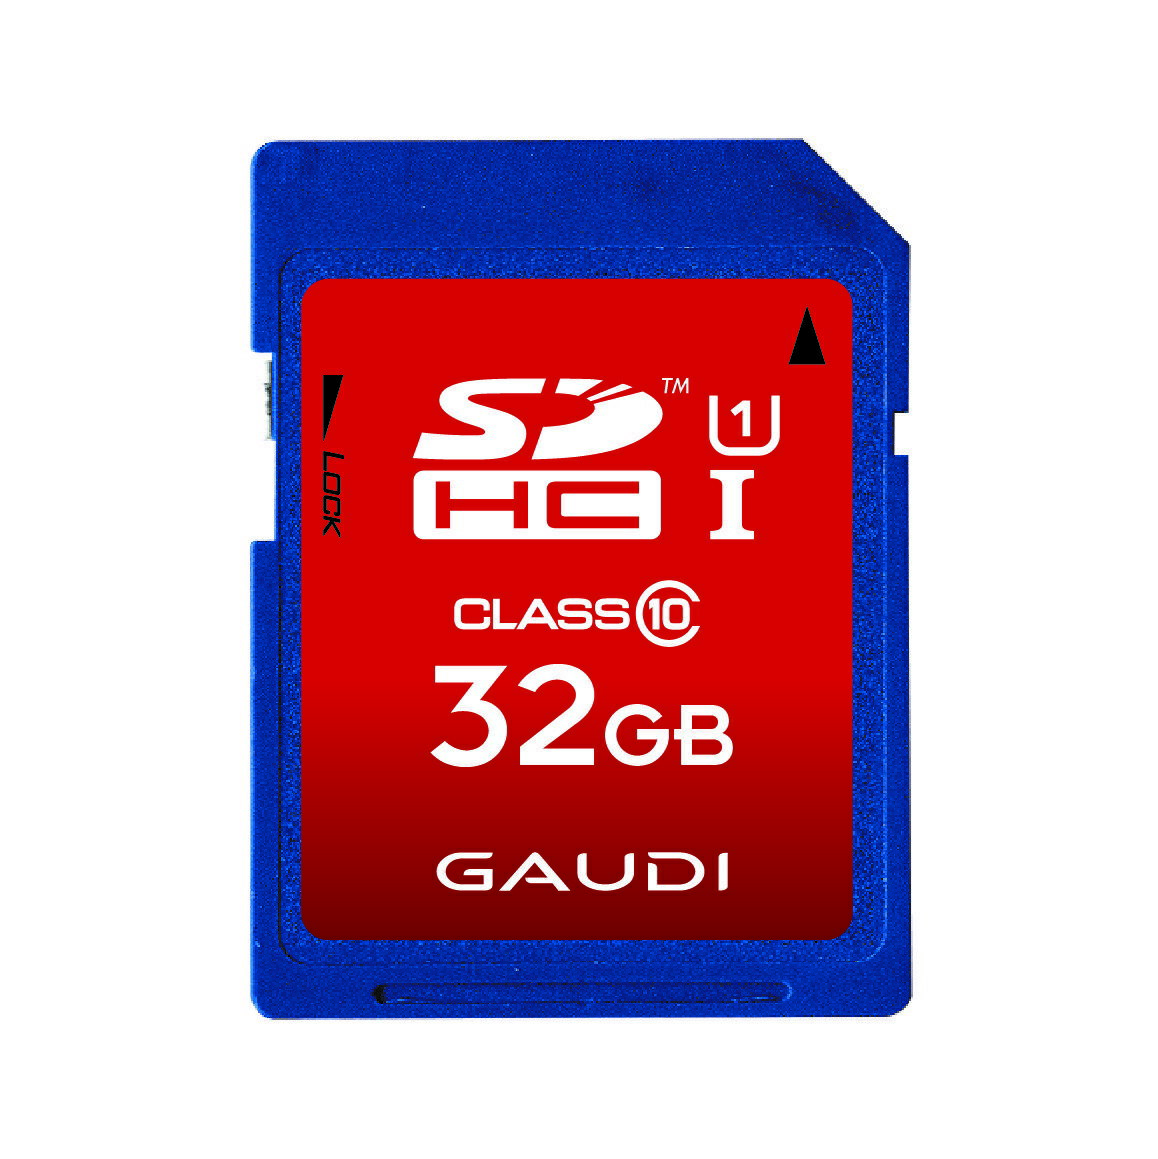 【セール限定10%OFF】 SDカード 32GB SDHC read:40MB s UHS-I Class10 GSDHCU1A32G gaudi sd 32g スマホ sdカード デジタル一眼レフカメラ 大容量 フラッシュ メモリー カード グリーンハウス